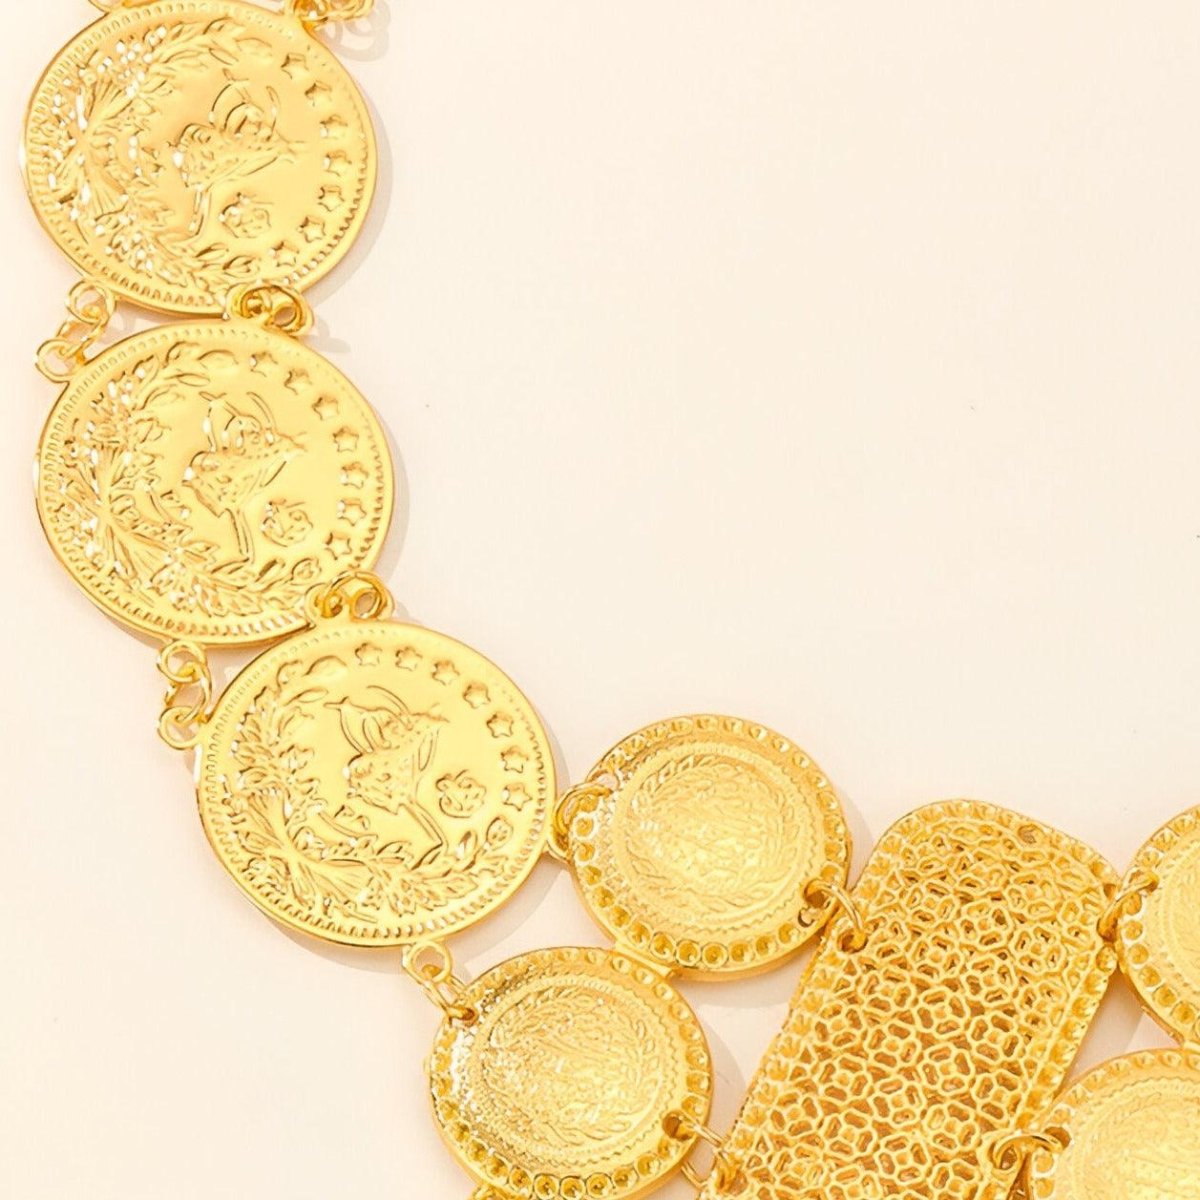 Ceinture marocaine alternant médaillons et plaquettes dorées avec pendentifs, modèle Shanaz - La Boutique de la Ceinture